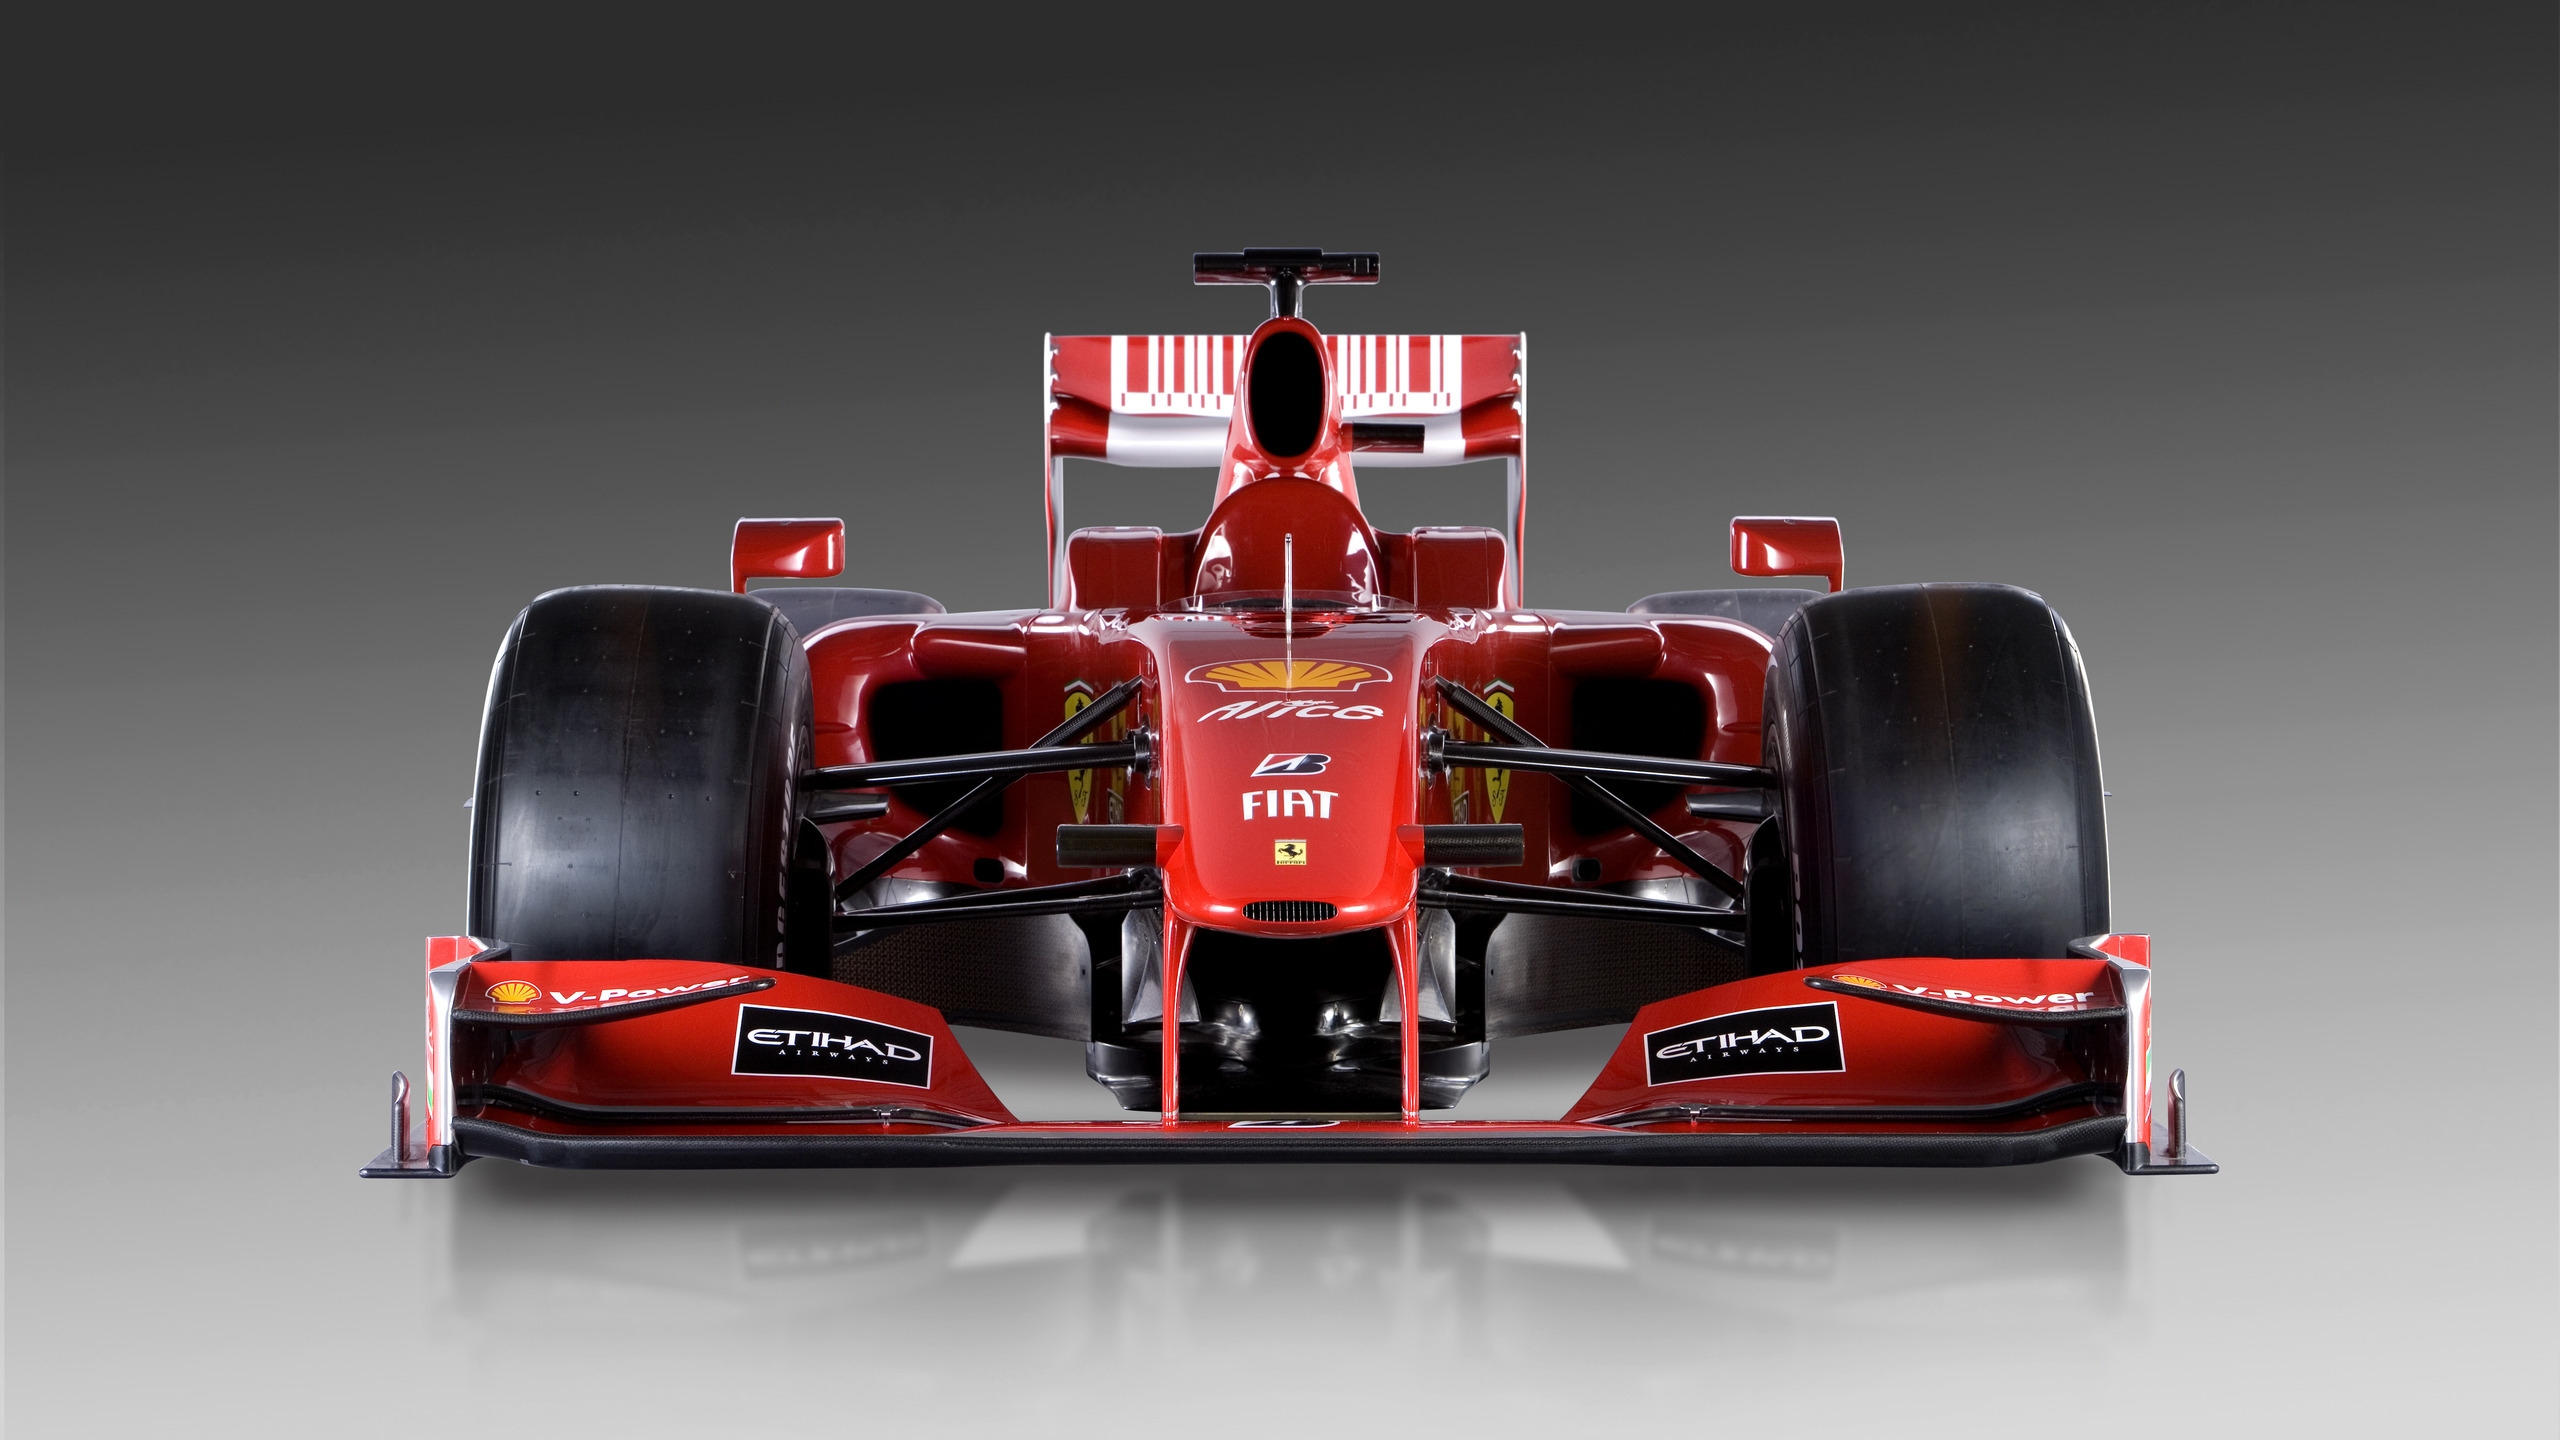 Ferrari Formula 1 for 2560x1440 HDTV resolution